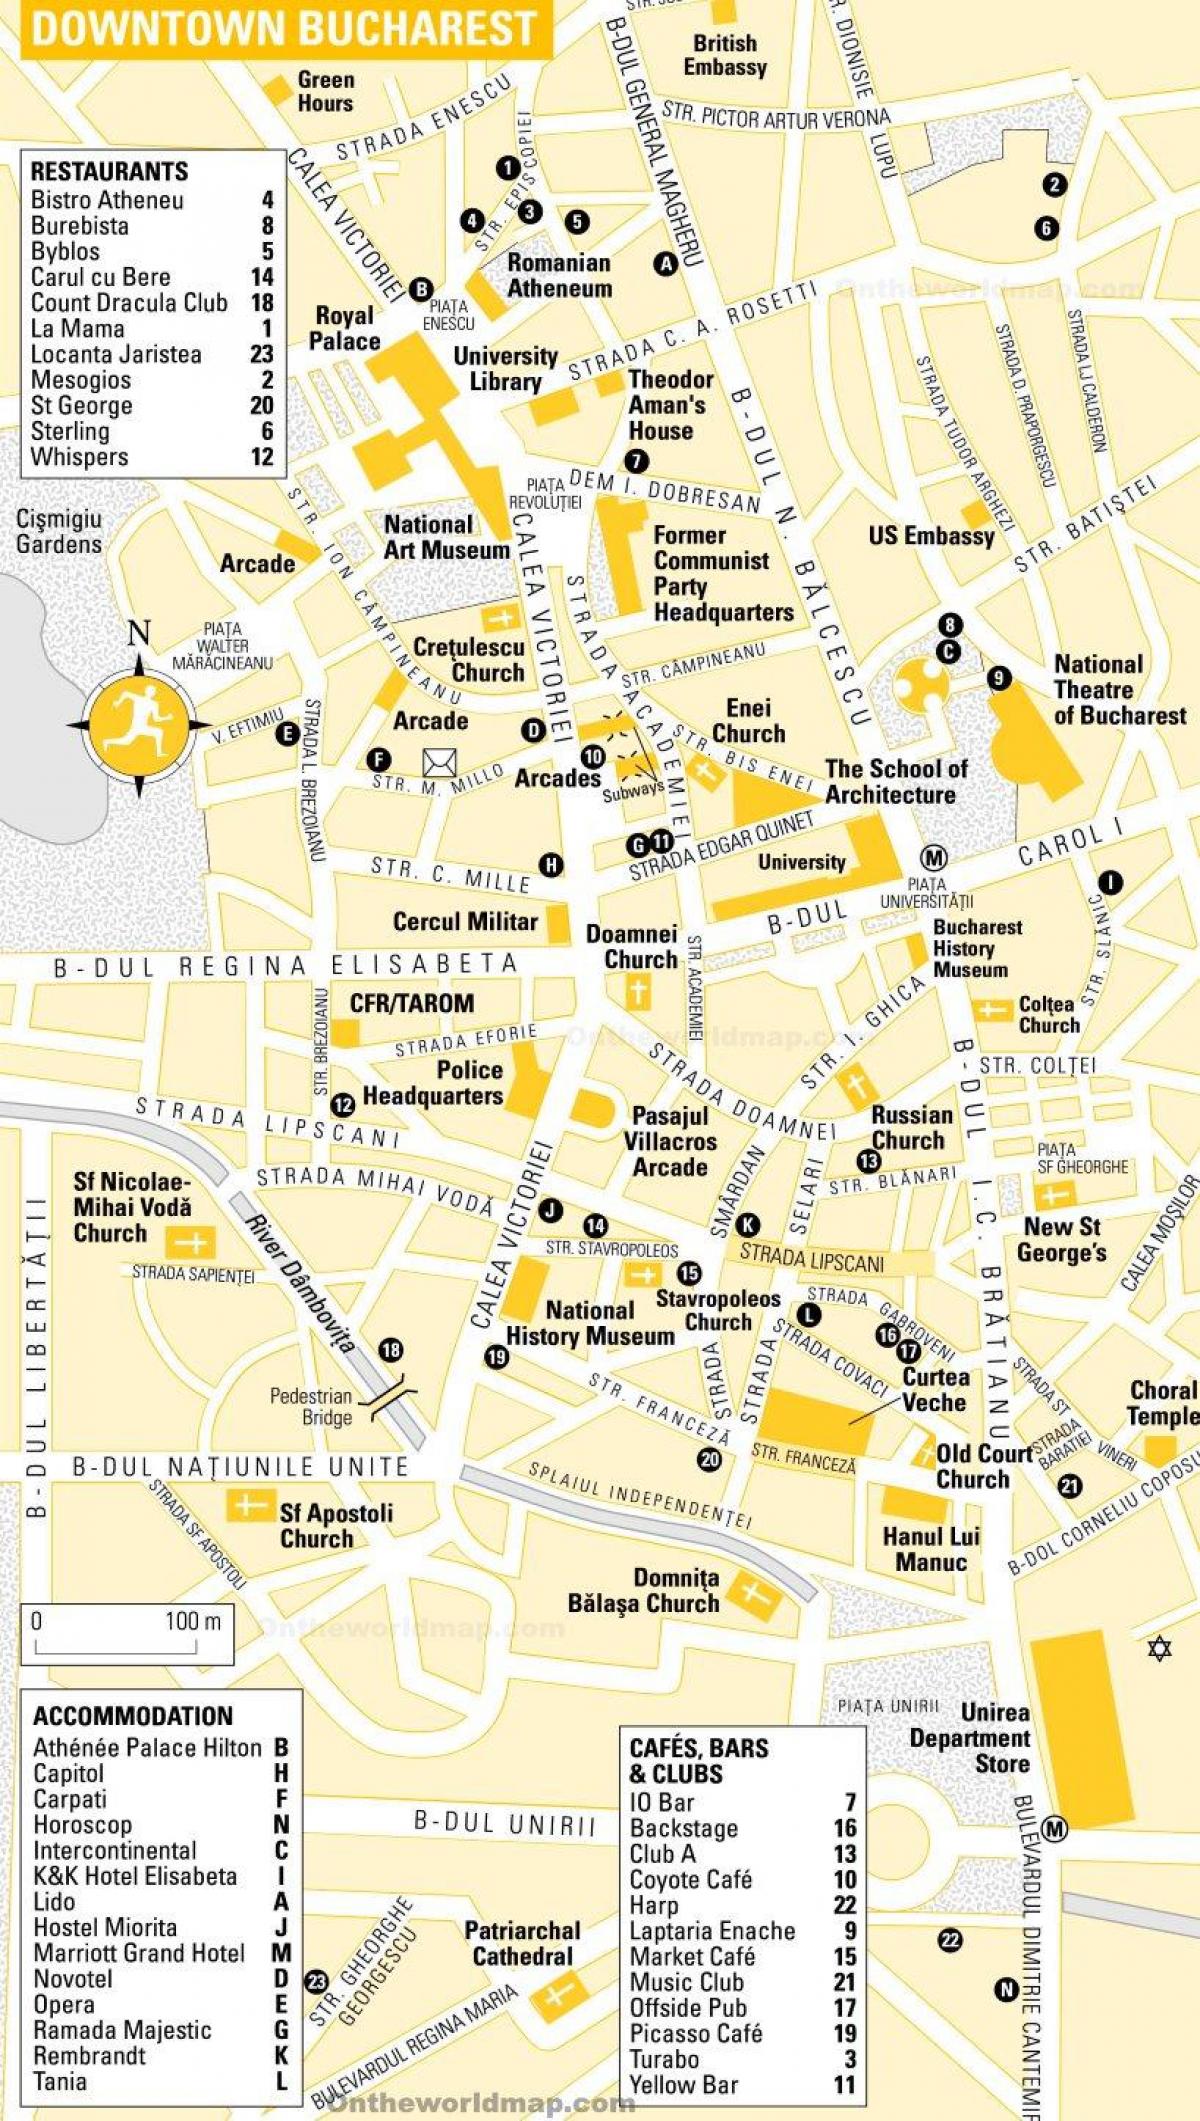 Mapa del centro de Bucarest